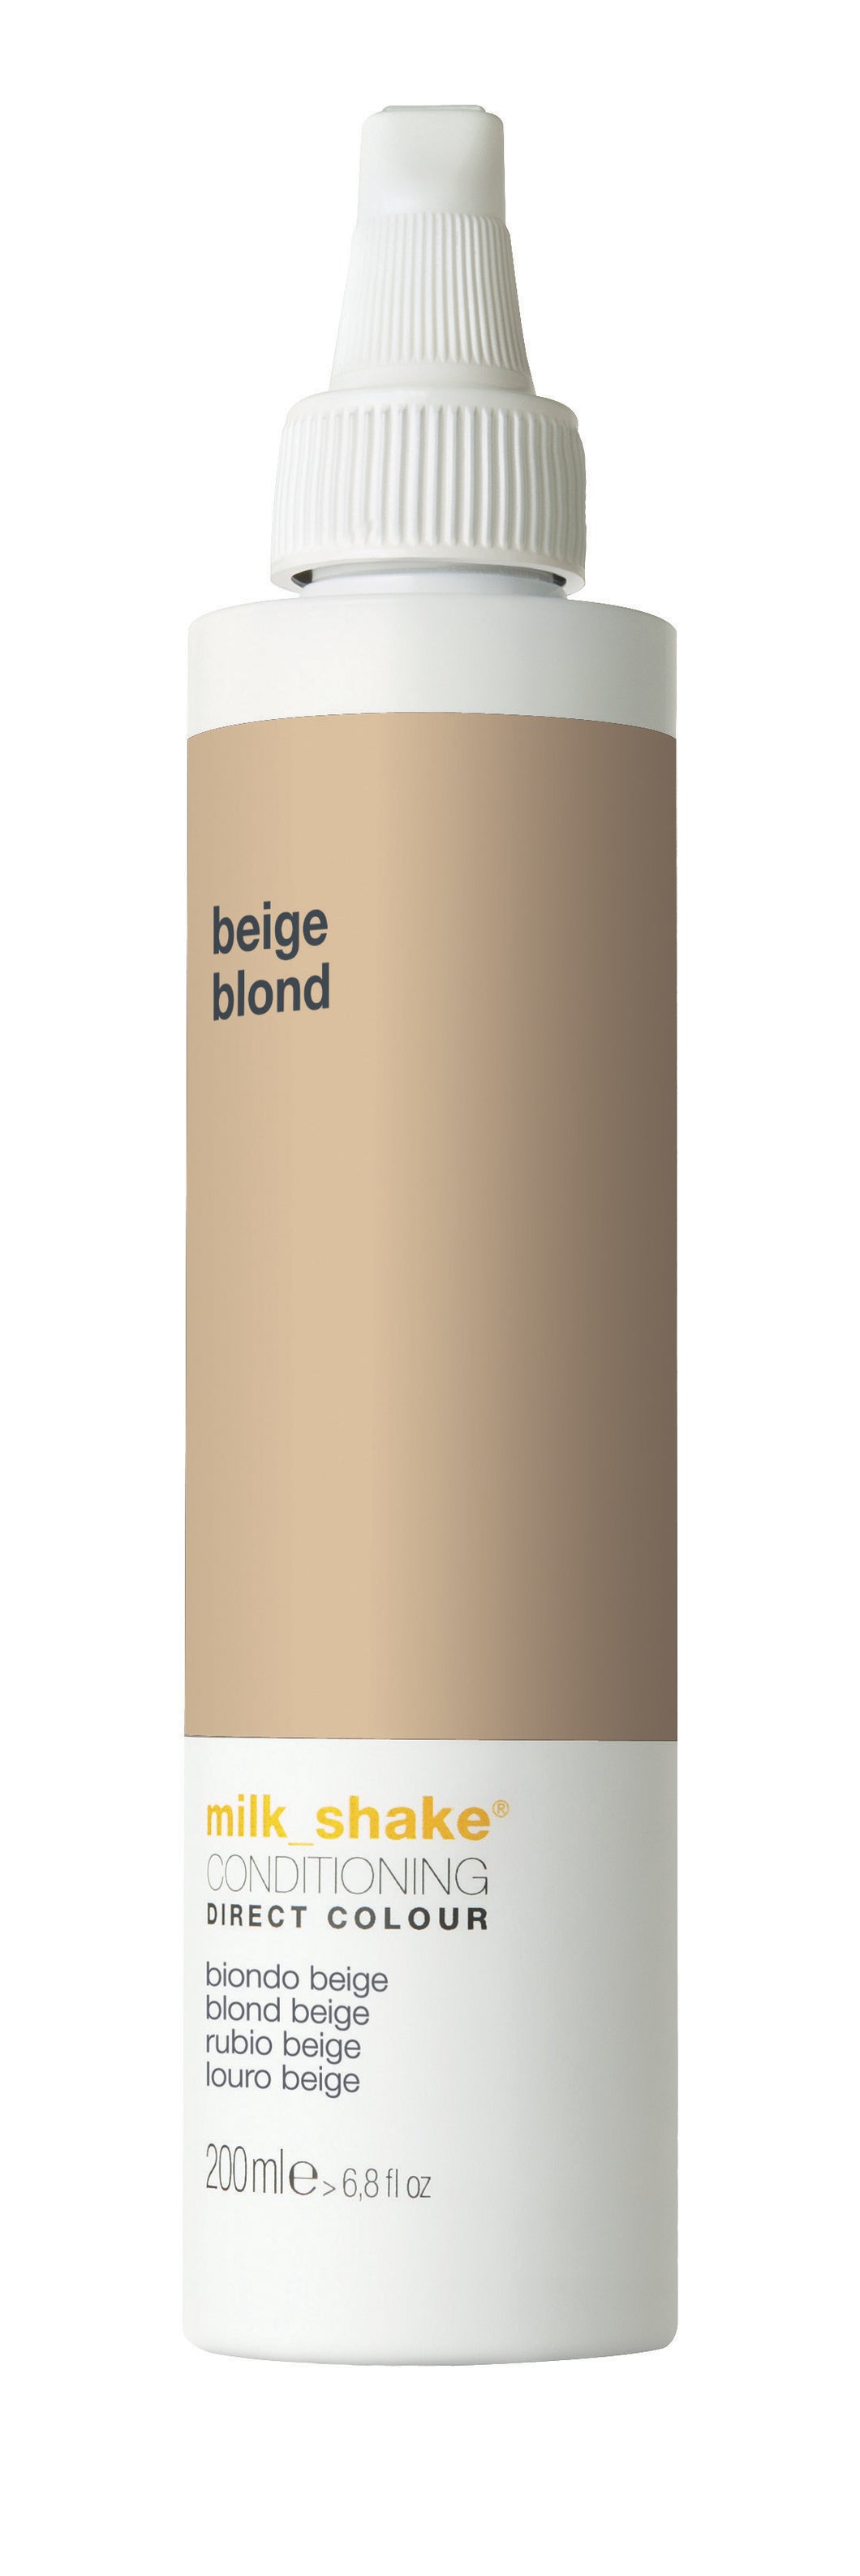 milk_shake direct colour beige blonde-0